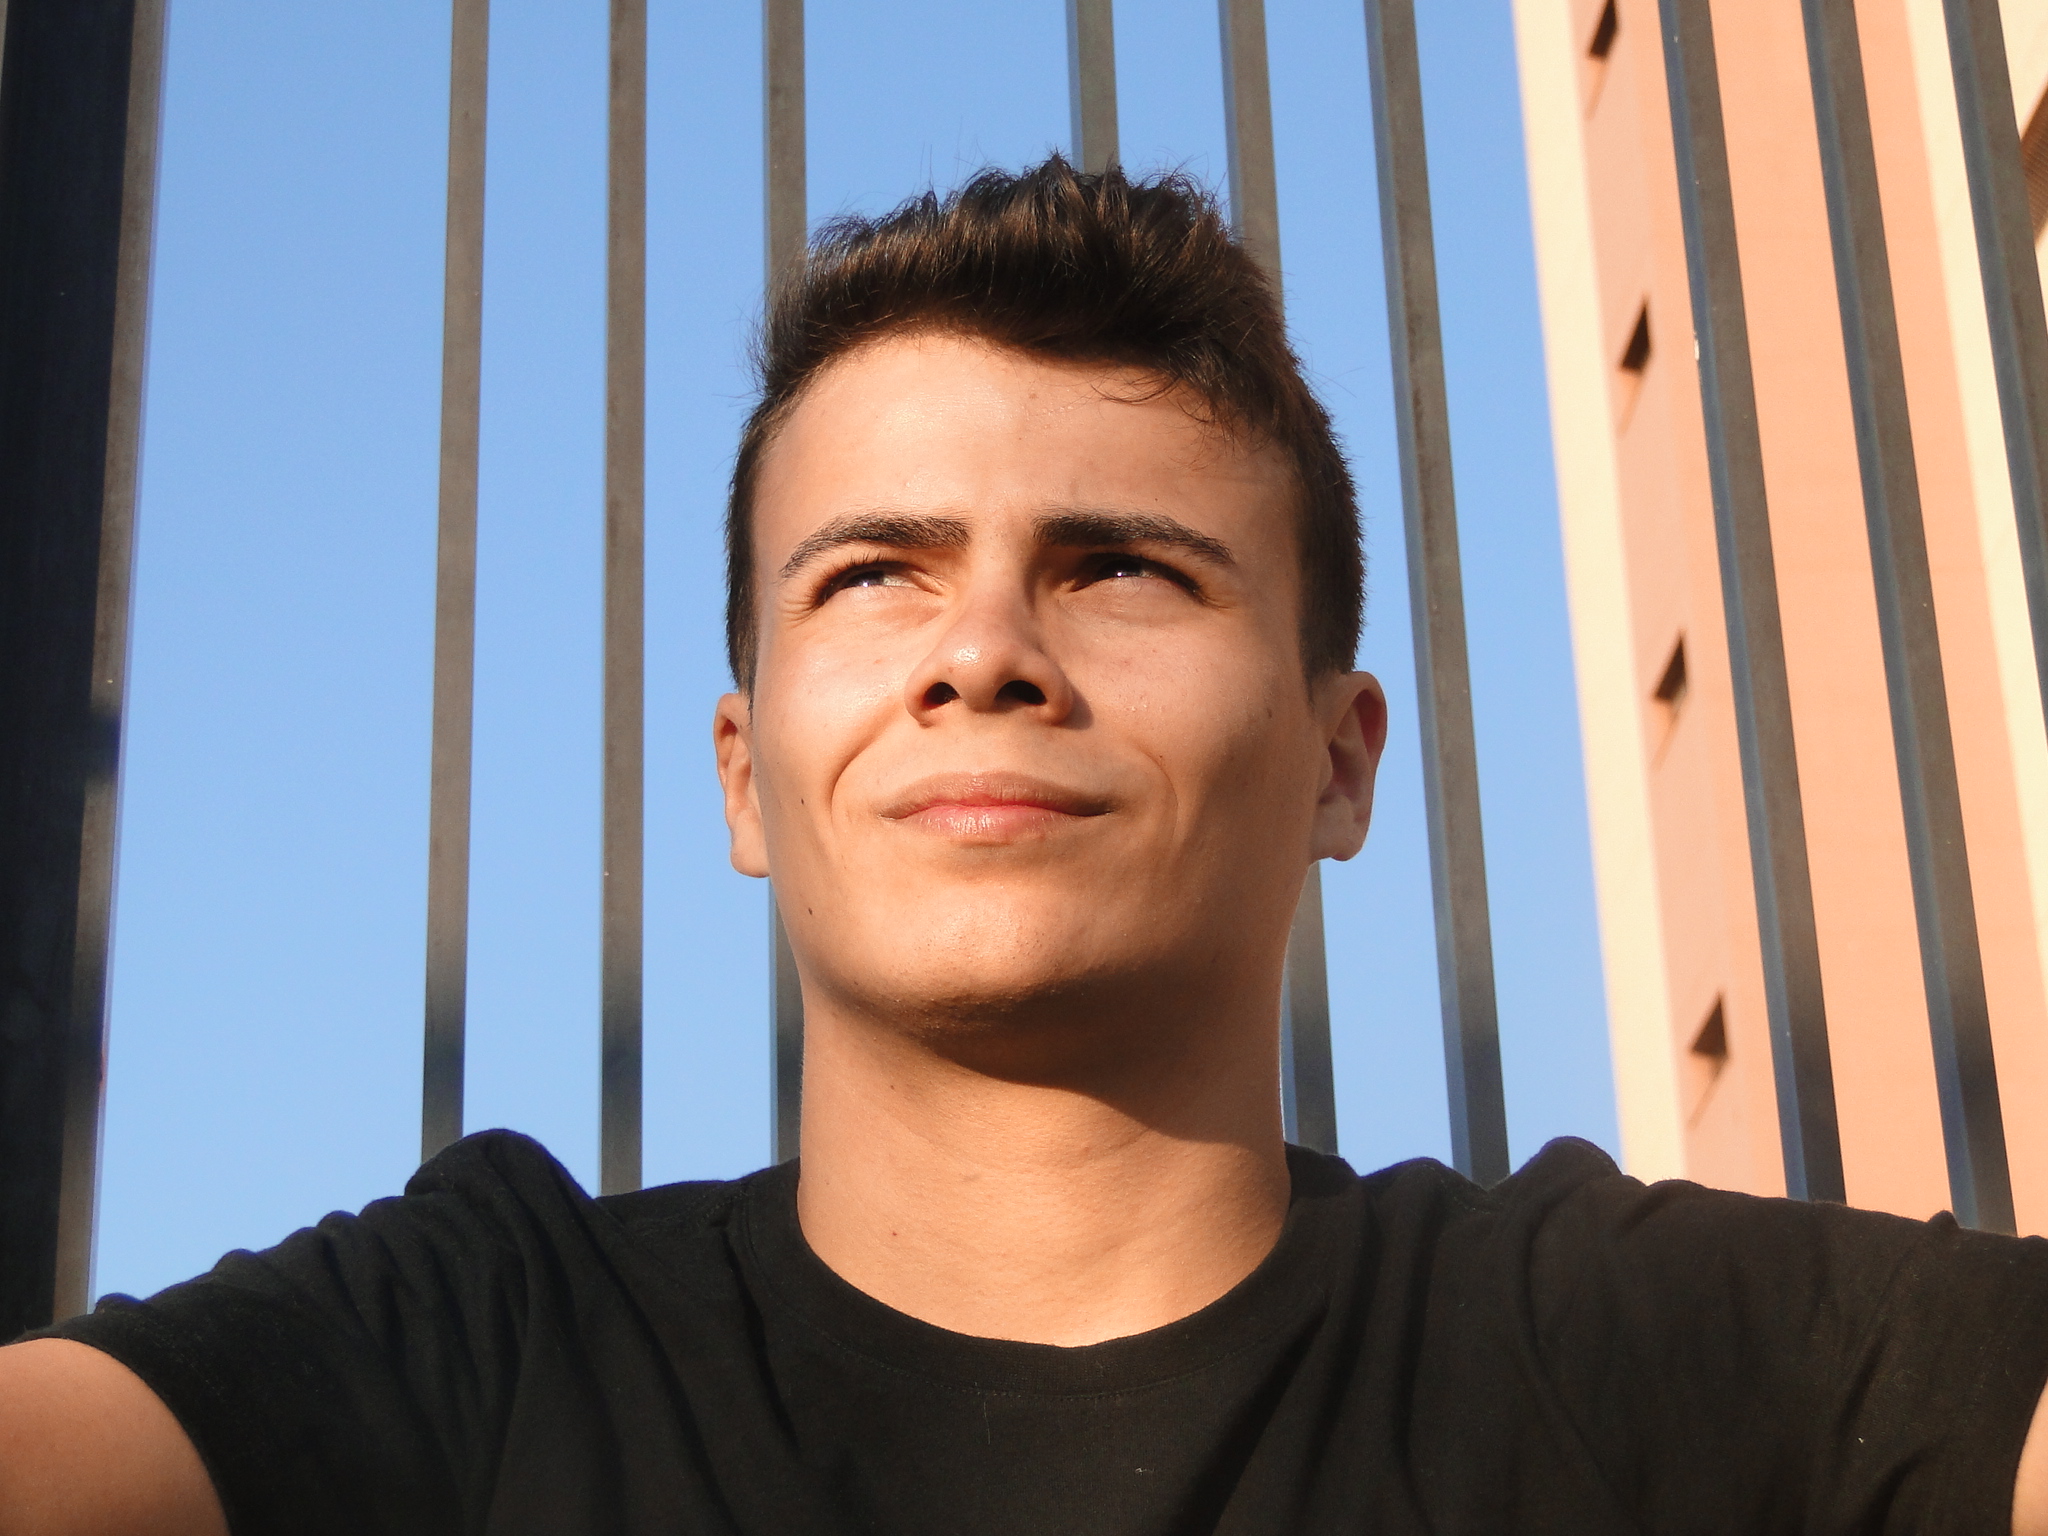 Foto de Luís Otávio Gaido Grizzo, na foto ele usa uma camisa preta e olha para o horizonte com o sol no rosto.